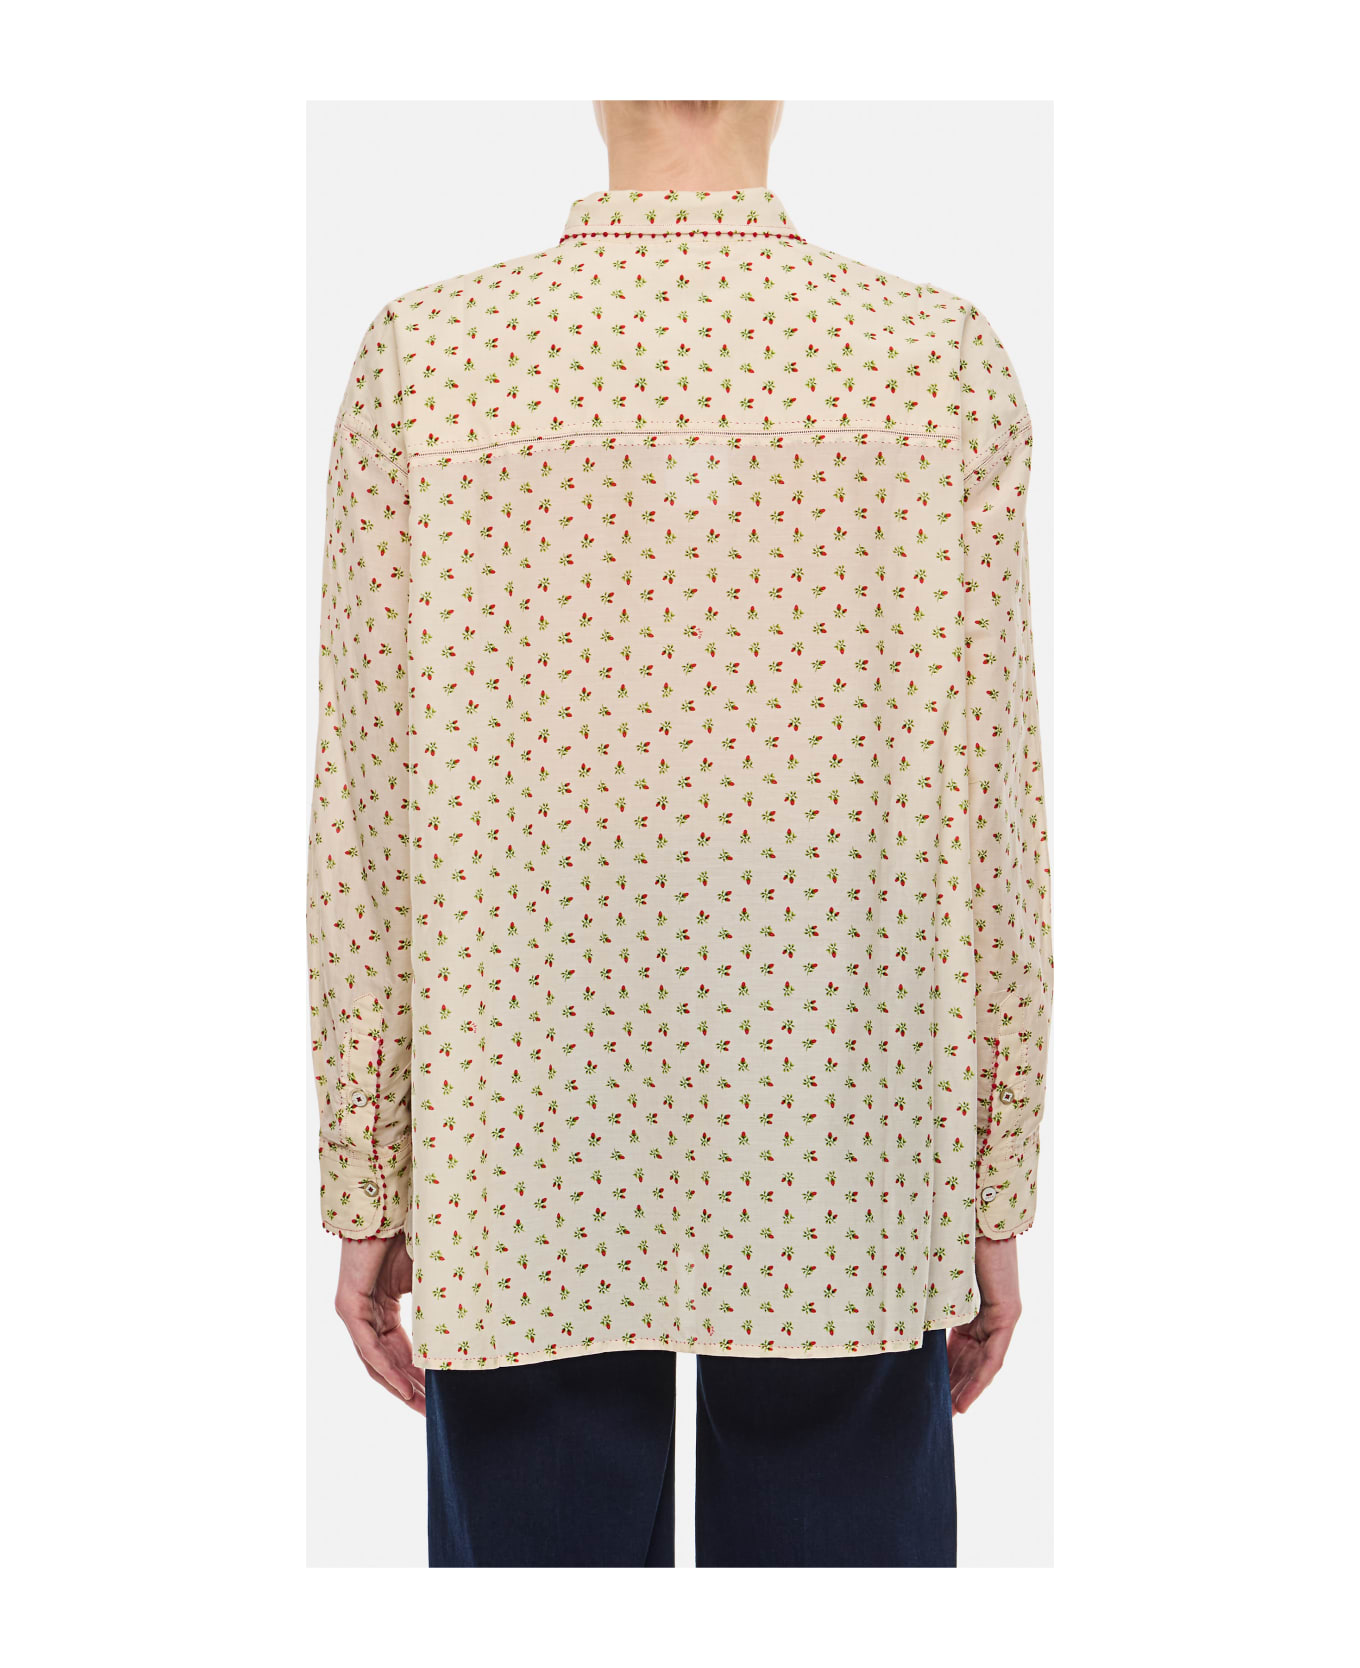 Péro Pattern Cotton Shirt - As Multi ショートパンツ